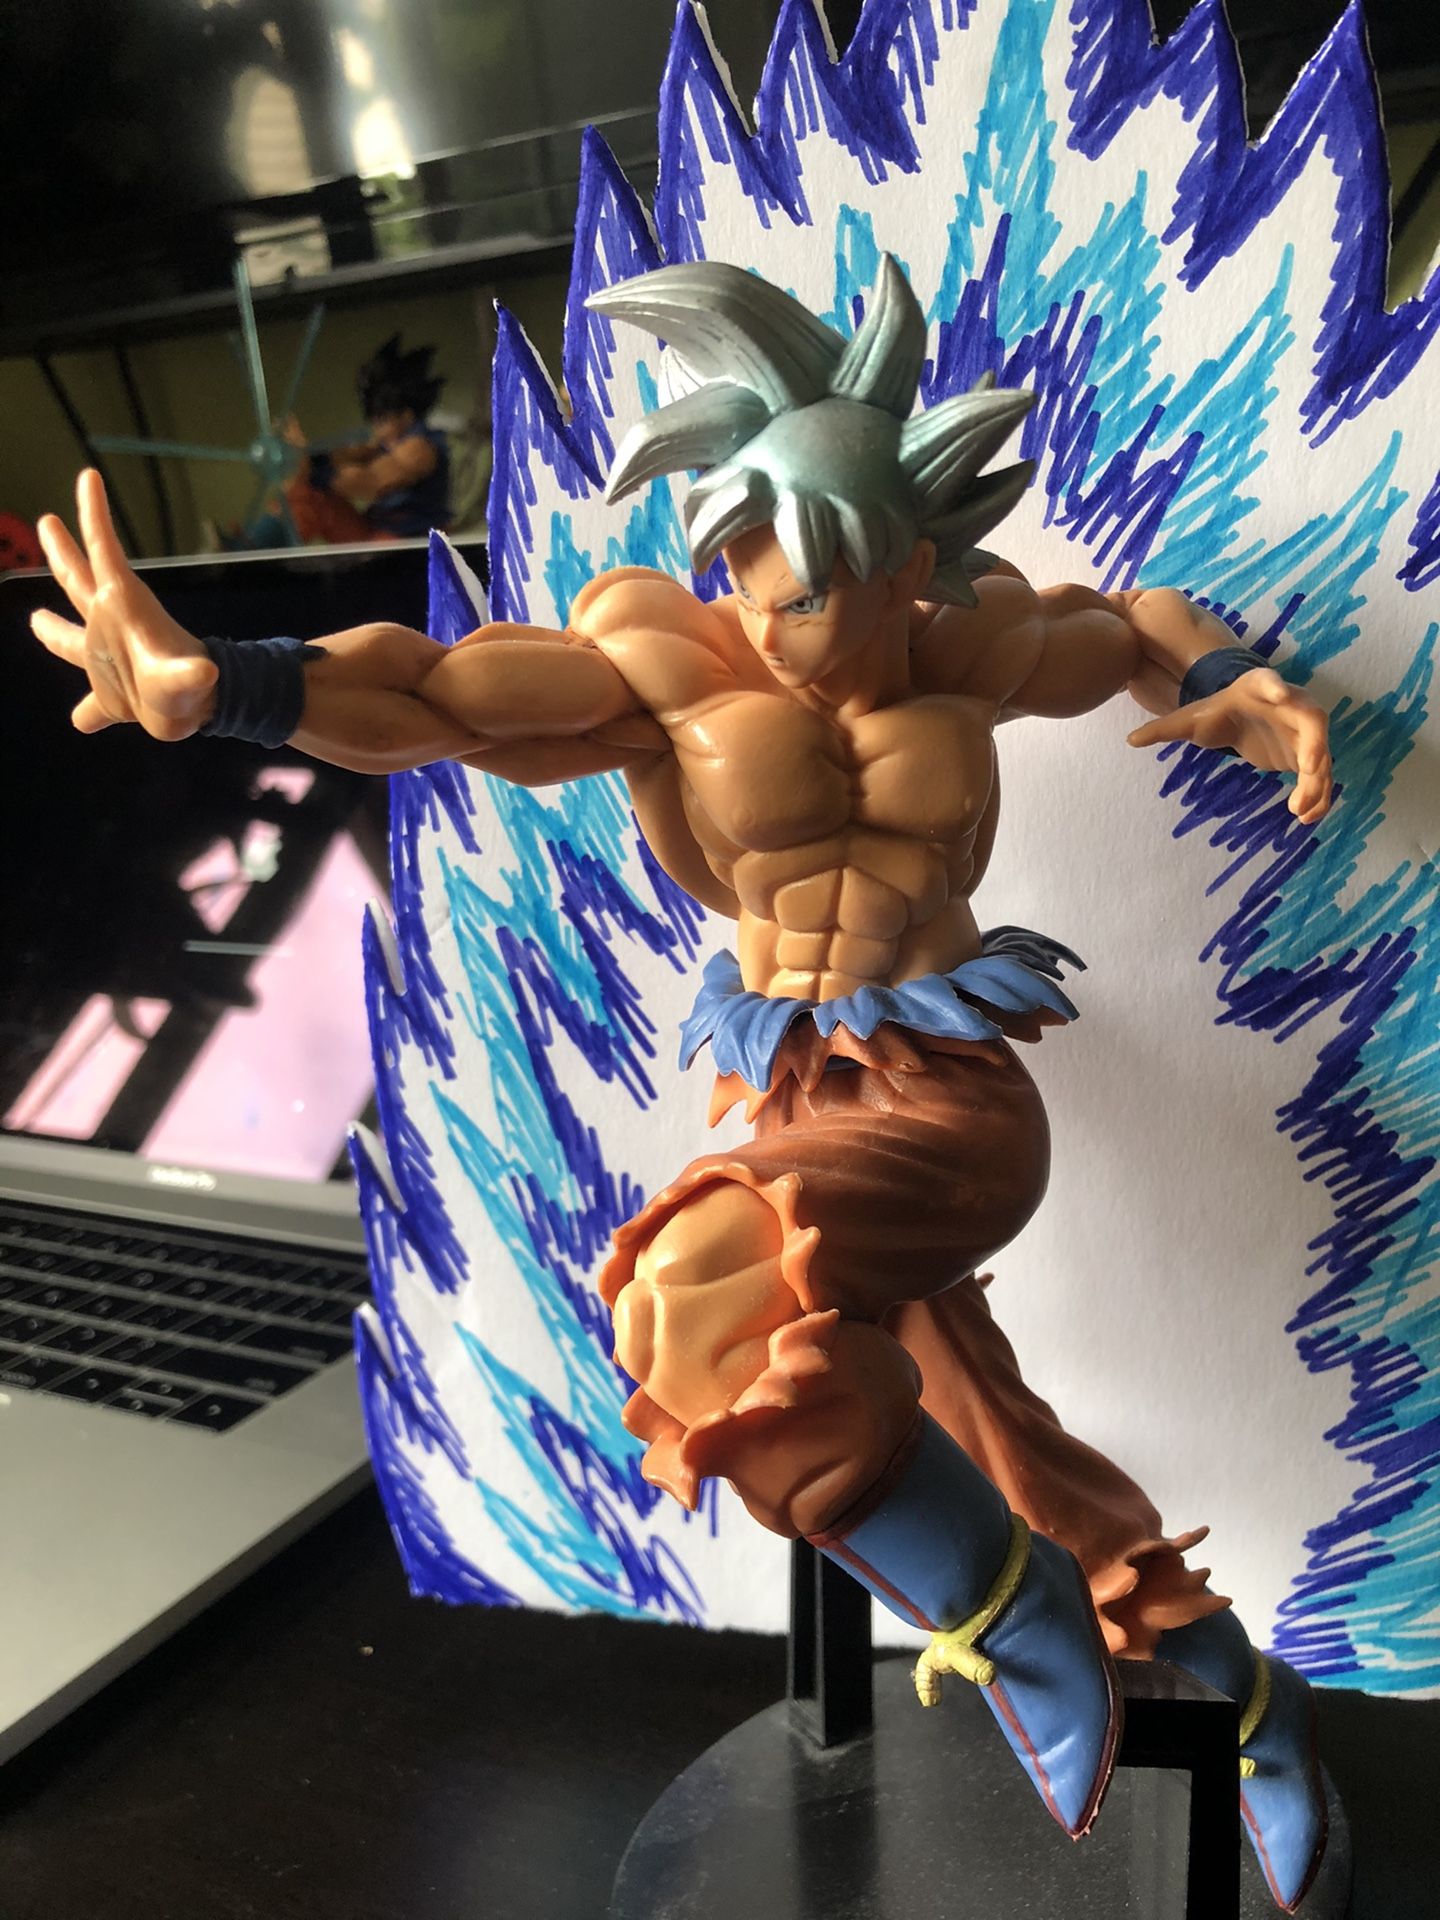 Ultra Instinct Goku figure/ figurine